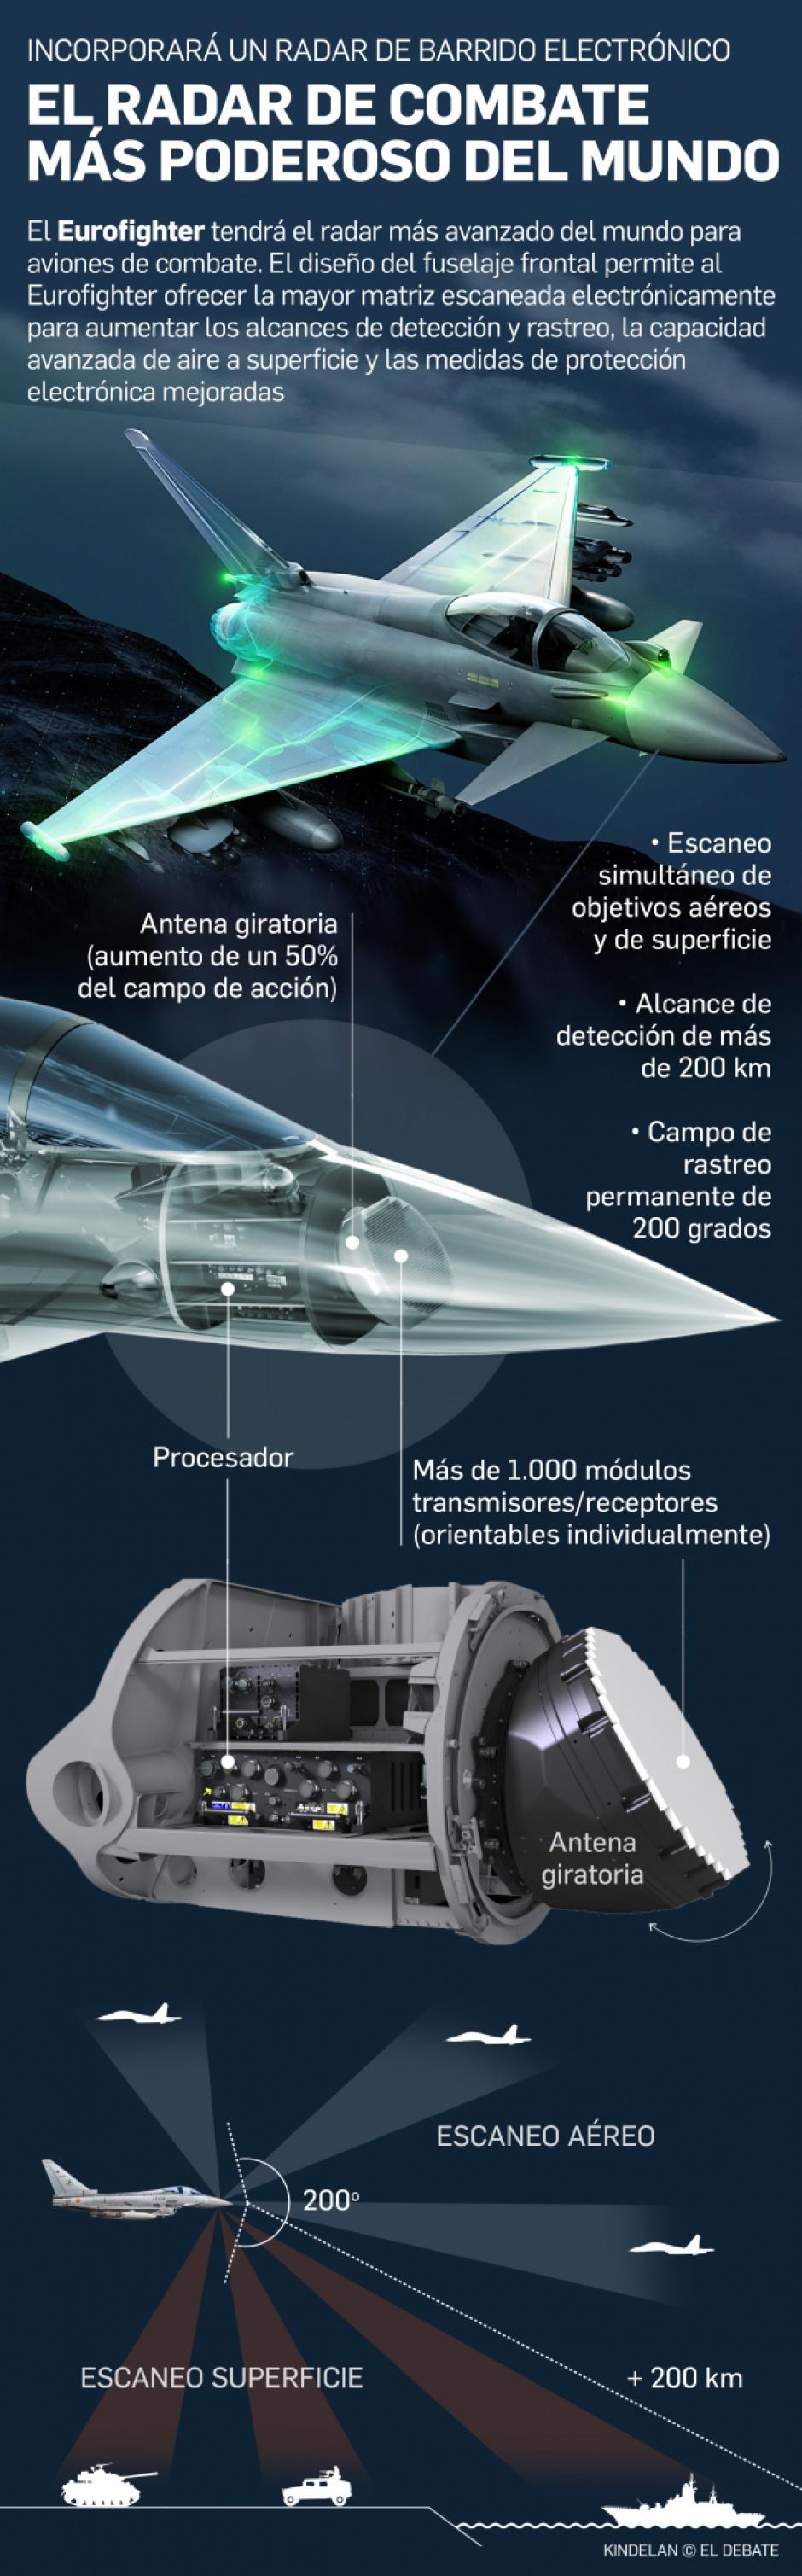 Radar Eurofighter